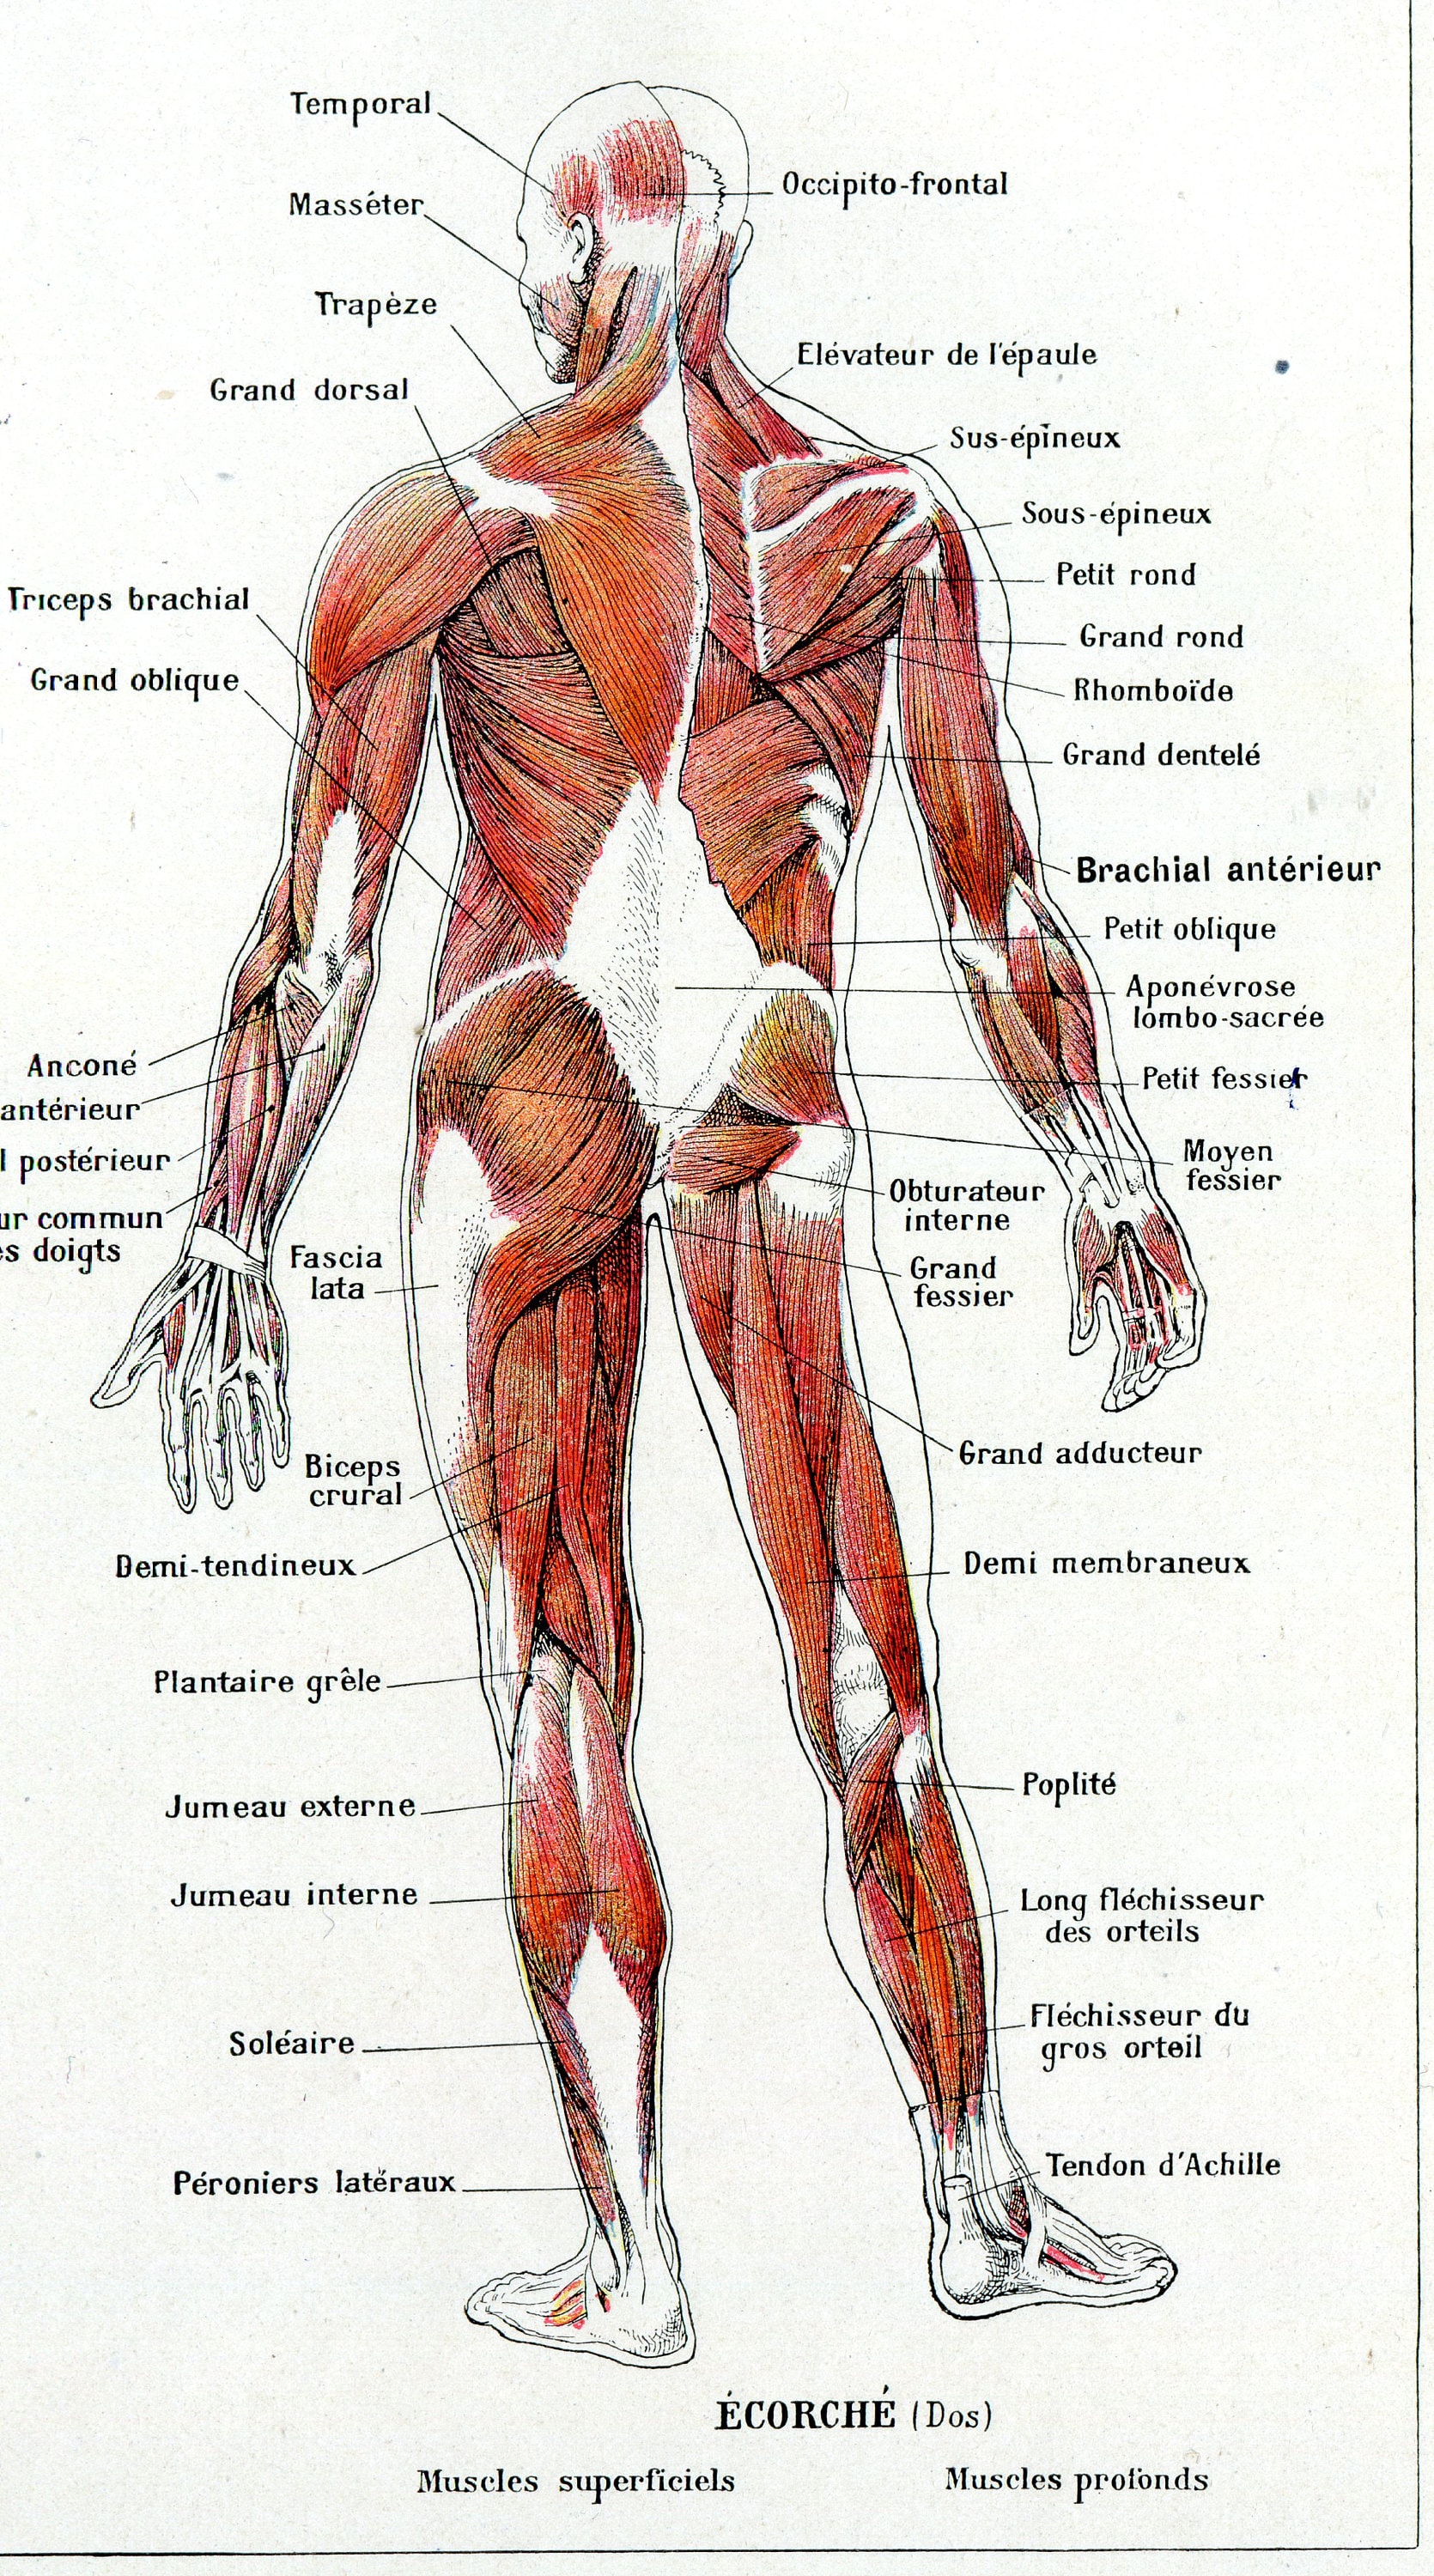 Anatomía artística, tablero de medicina, desollado, anatomía